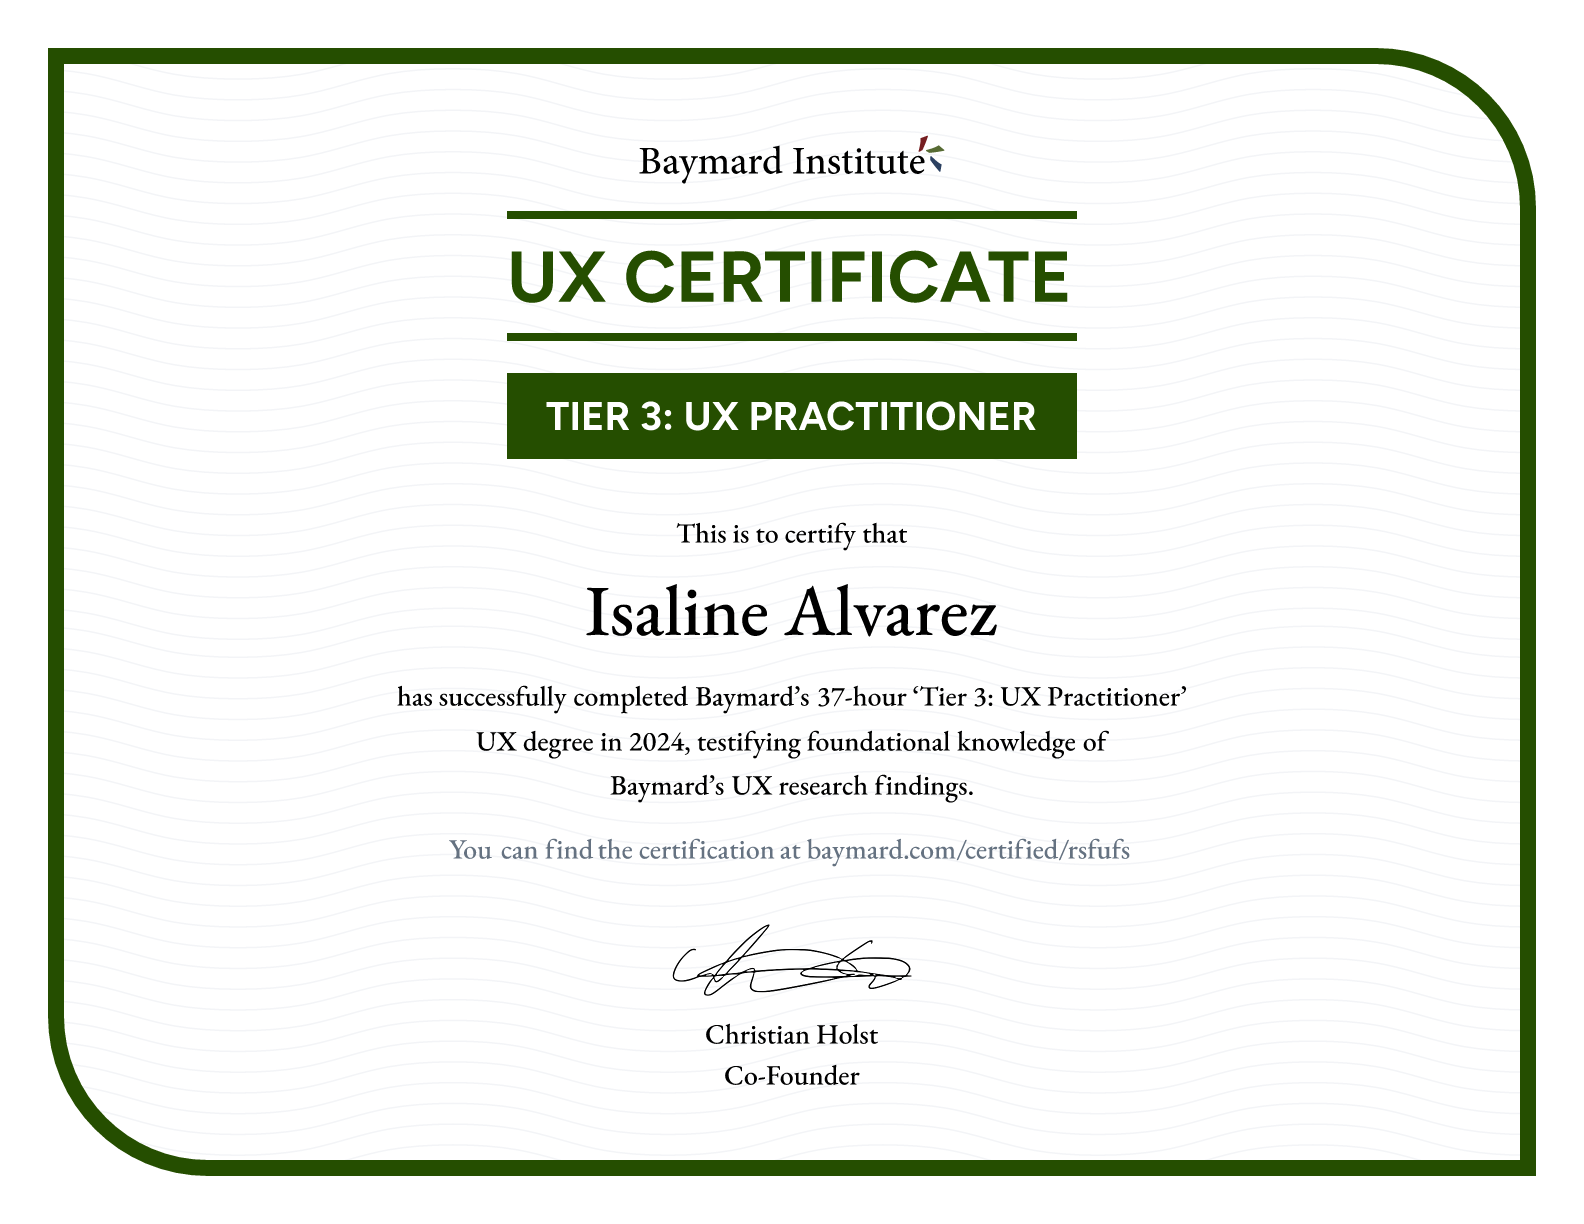 Isaline Alvarez’s certificate